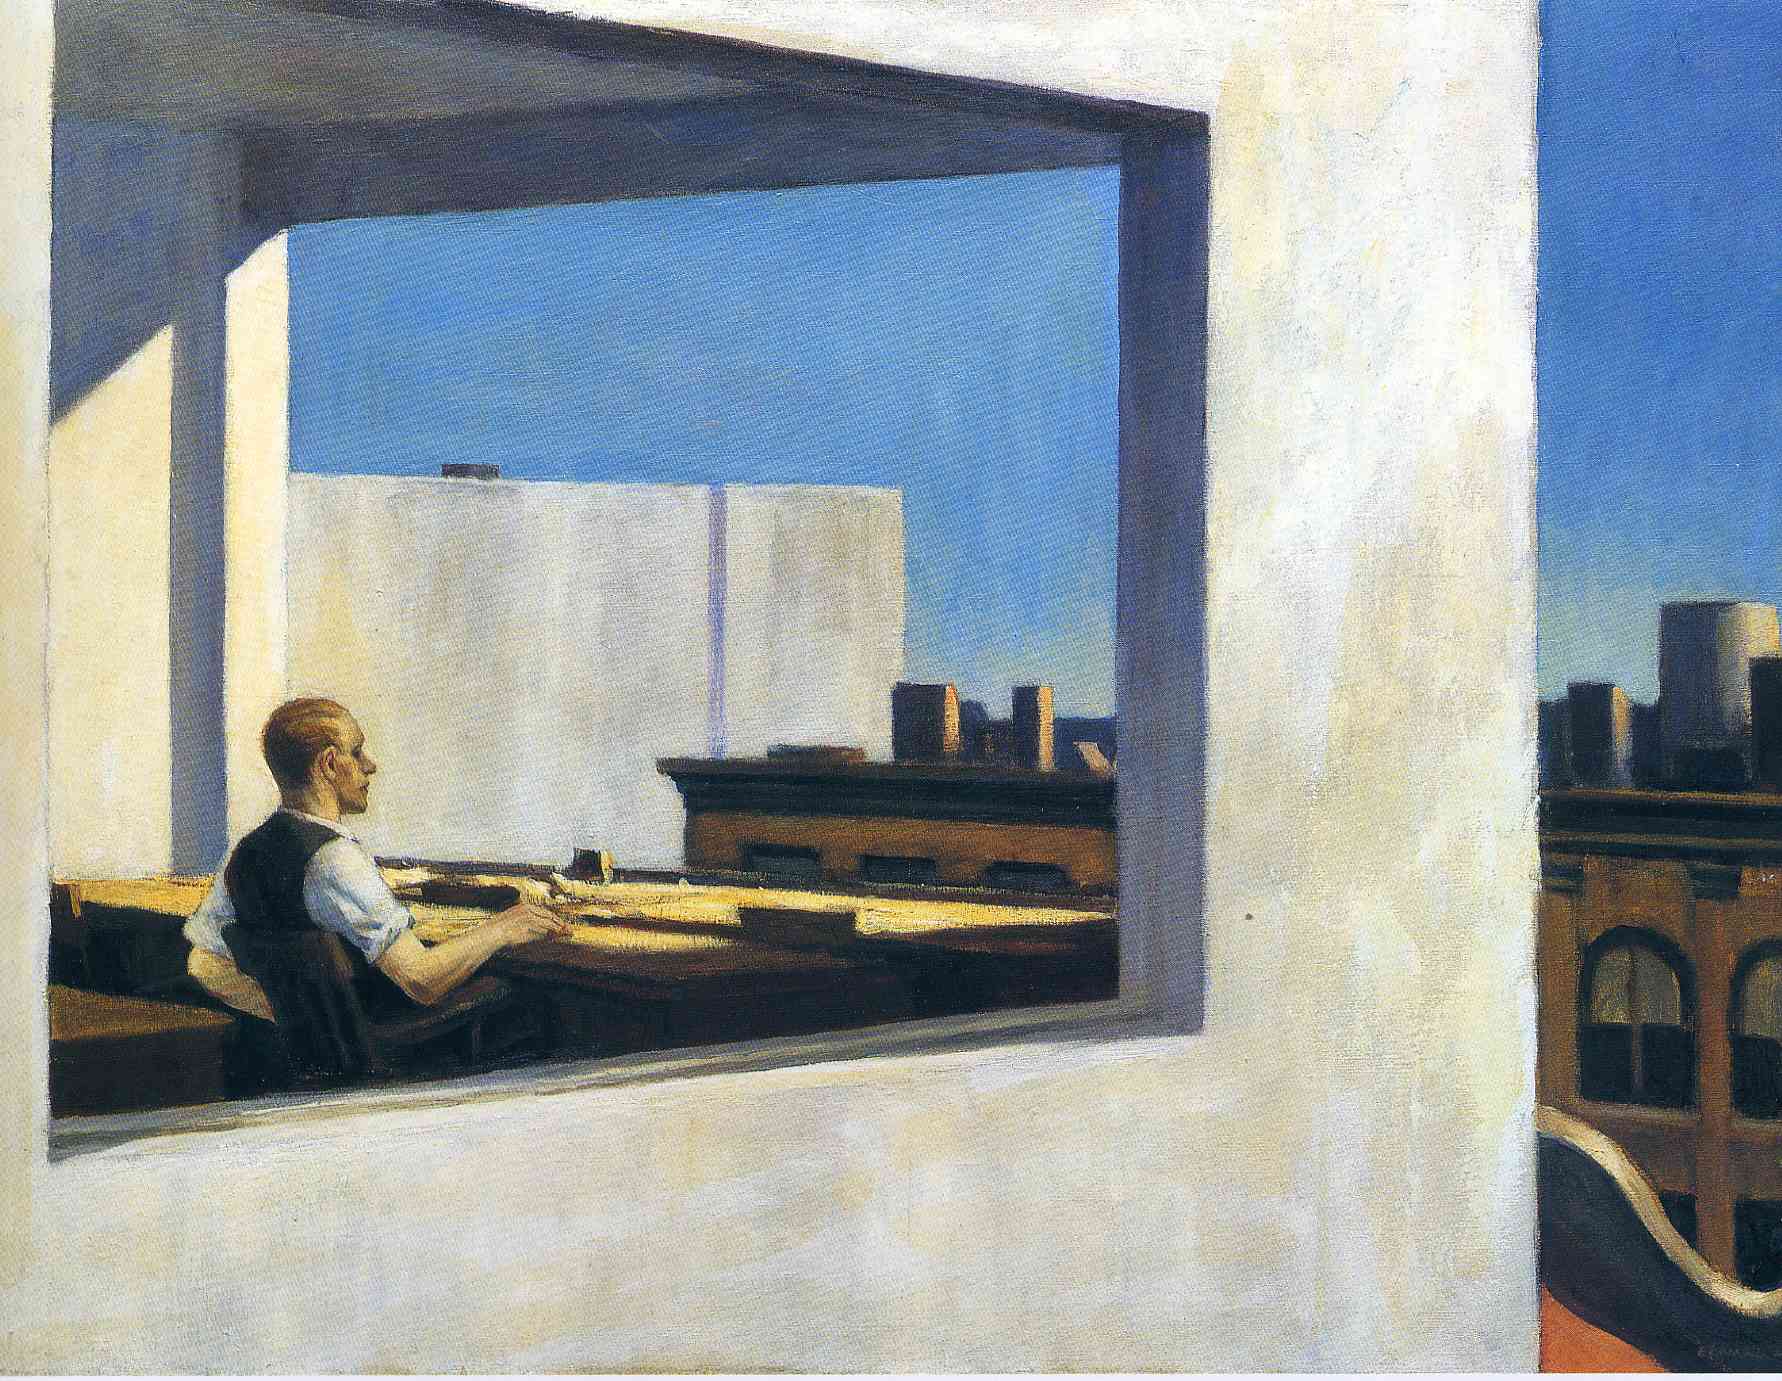 Kantoor in een kleine stad by Edward Hopper - 1953 - 71,1 x 101,6 cm 